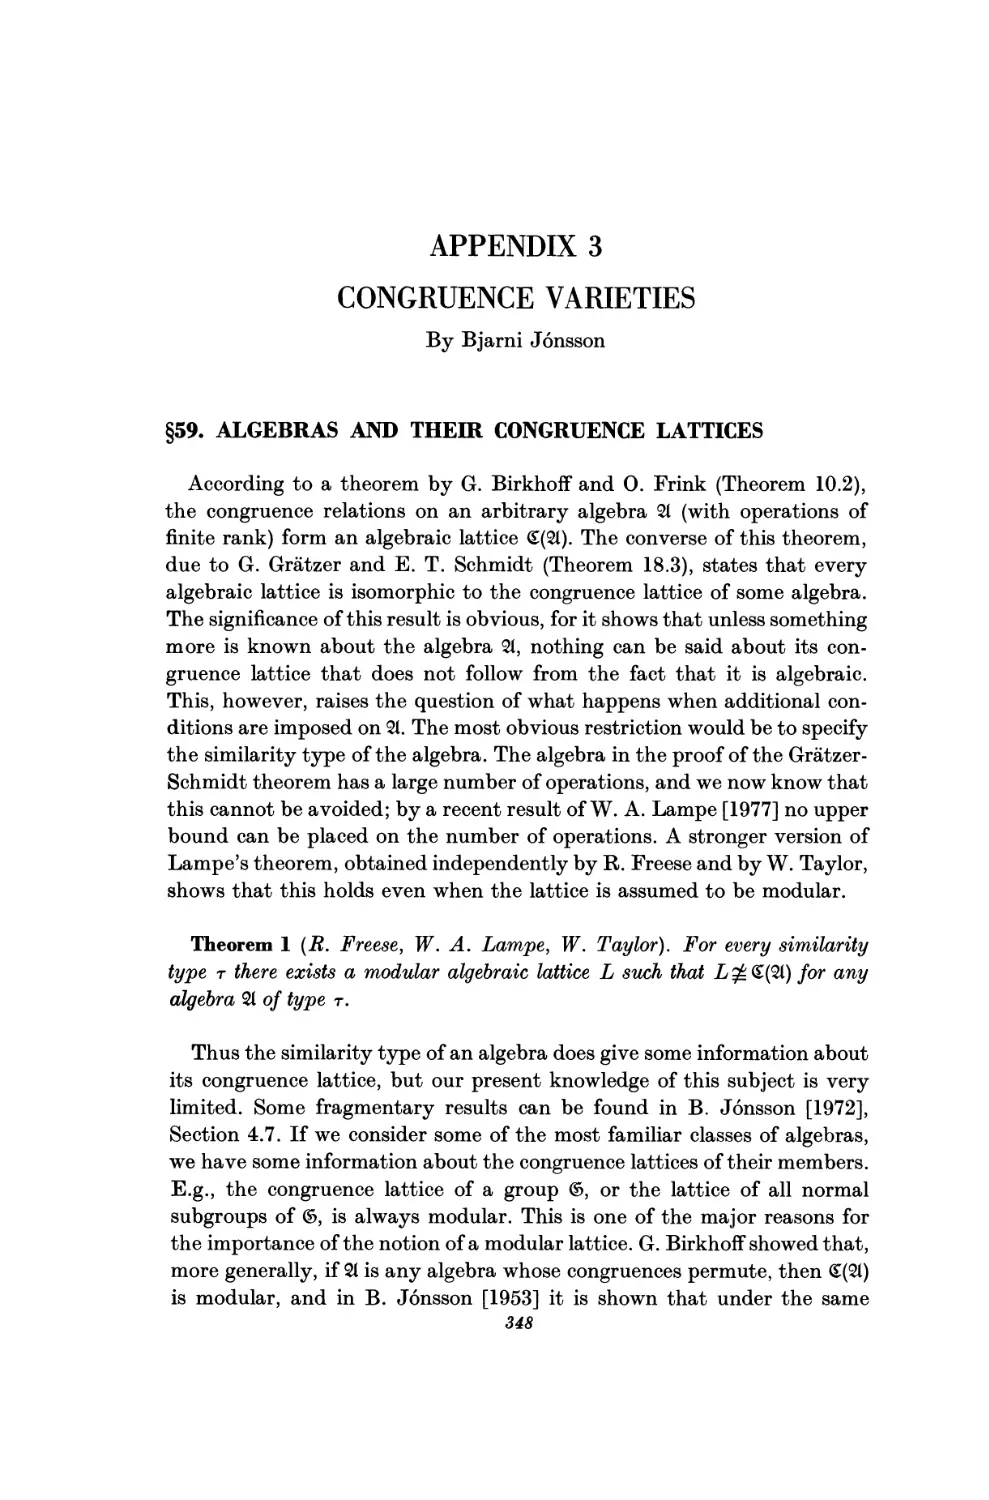 Appendix 3. Congruence varieties